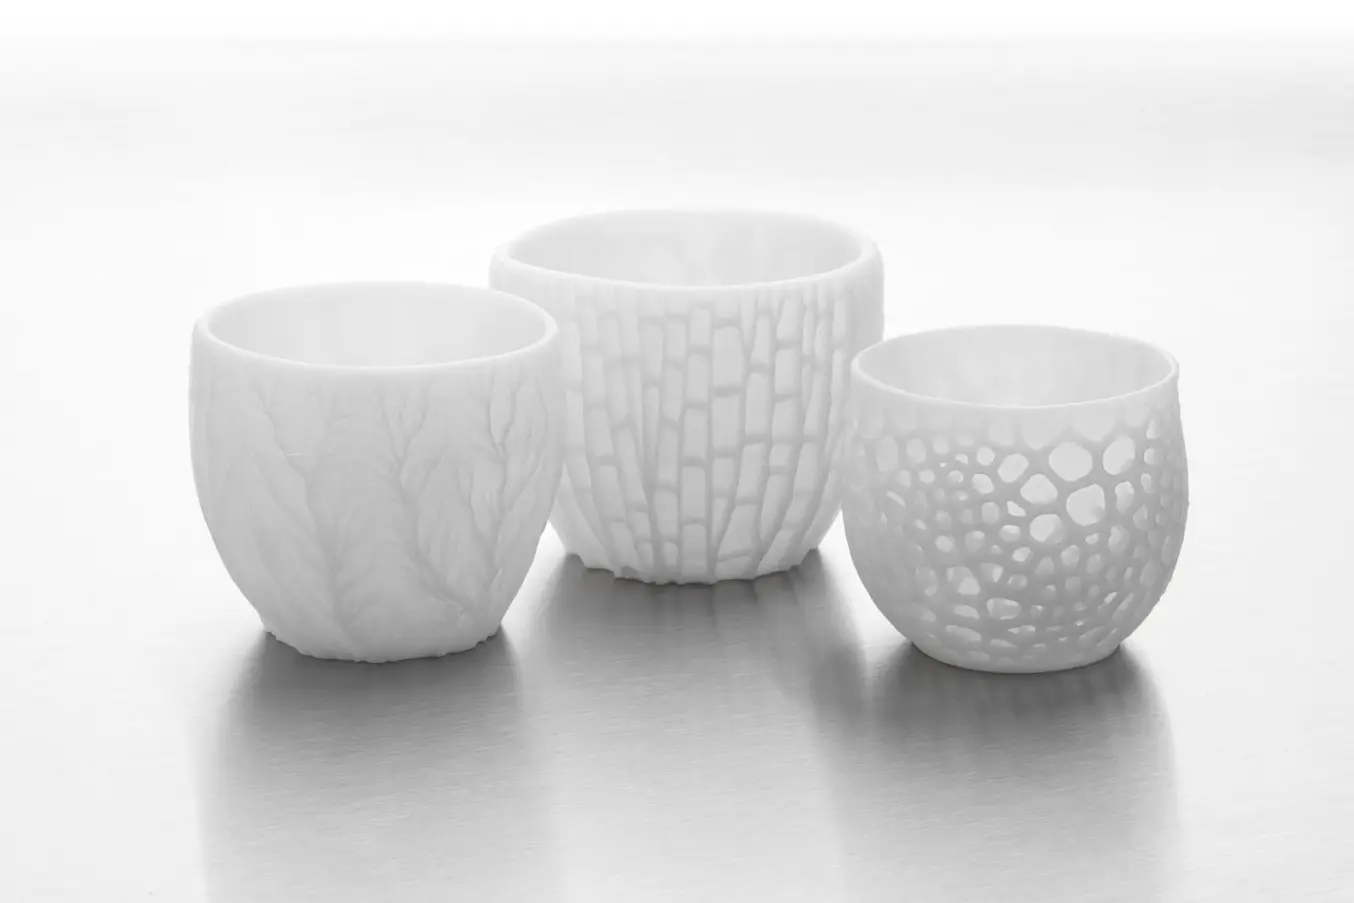 La impresión 3D con cerámica es ideal para fabricas geometrías complejas que serían imposibles de realizar a mano.